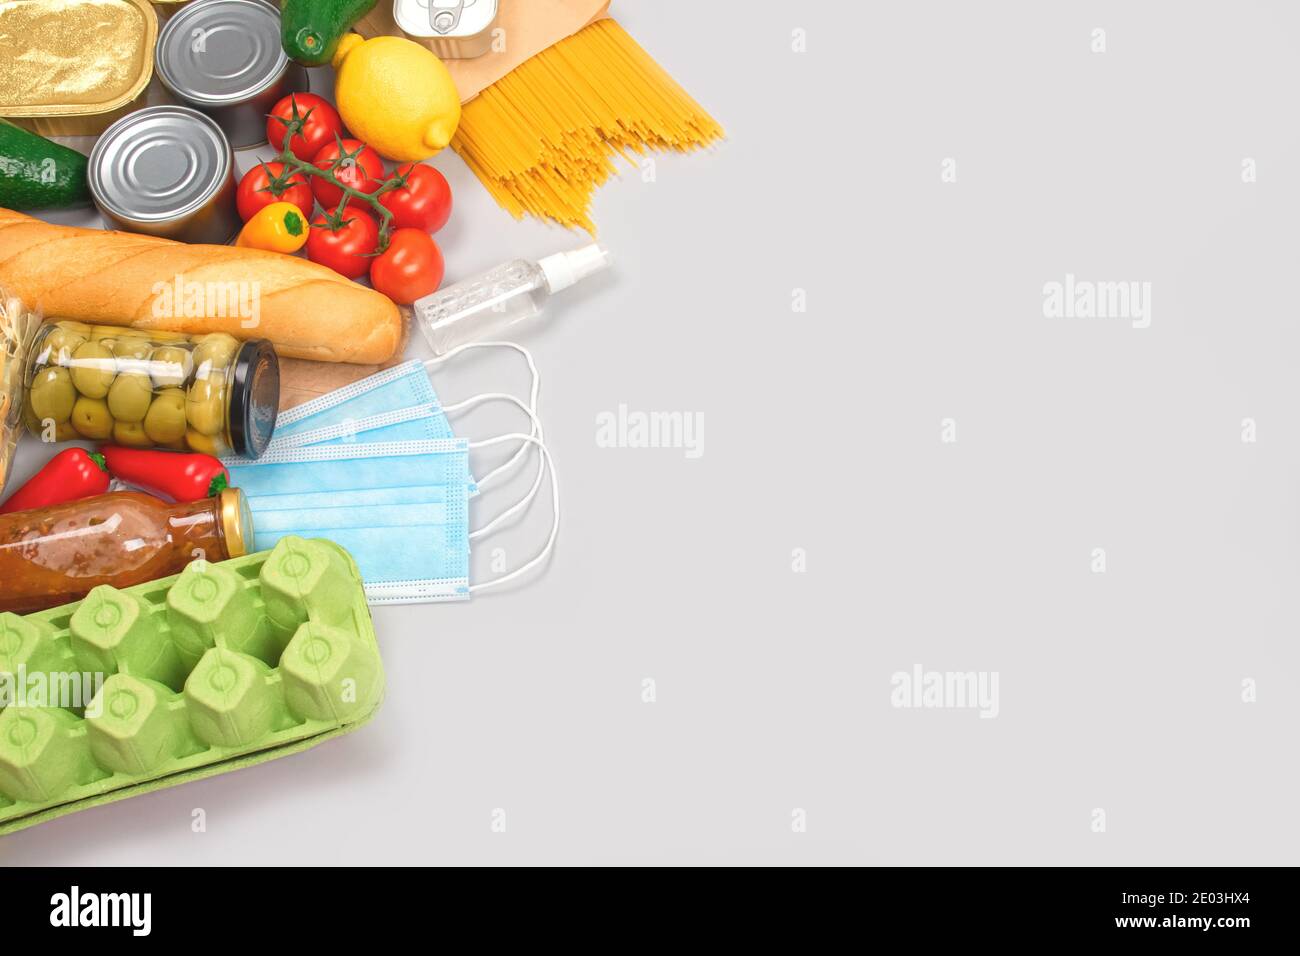 Composizione piatta con donazioni di cibo e medicine su sfondo grigio con copyspace - pasta, verdure fresche, cibo in scatola, baguette, olio da cucina Foto Stock